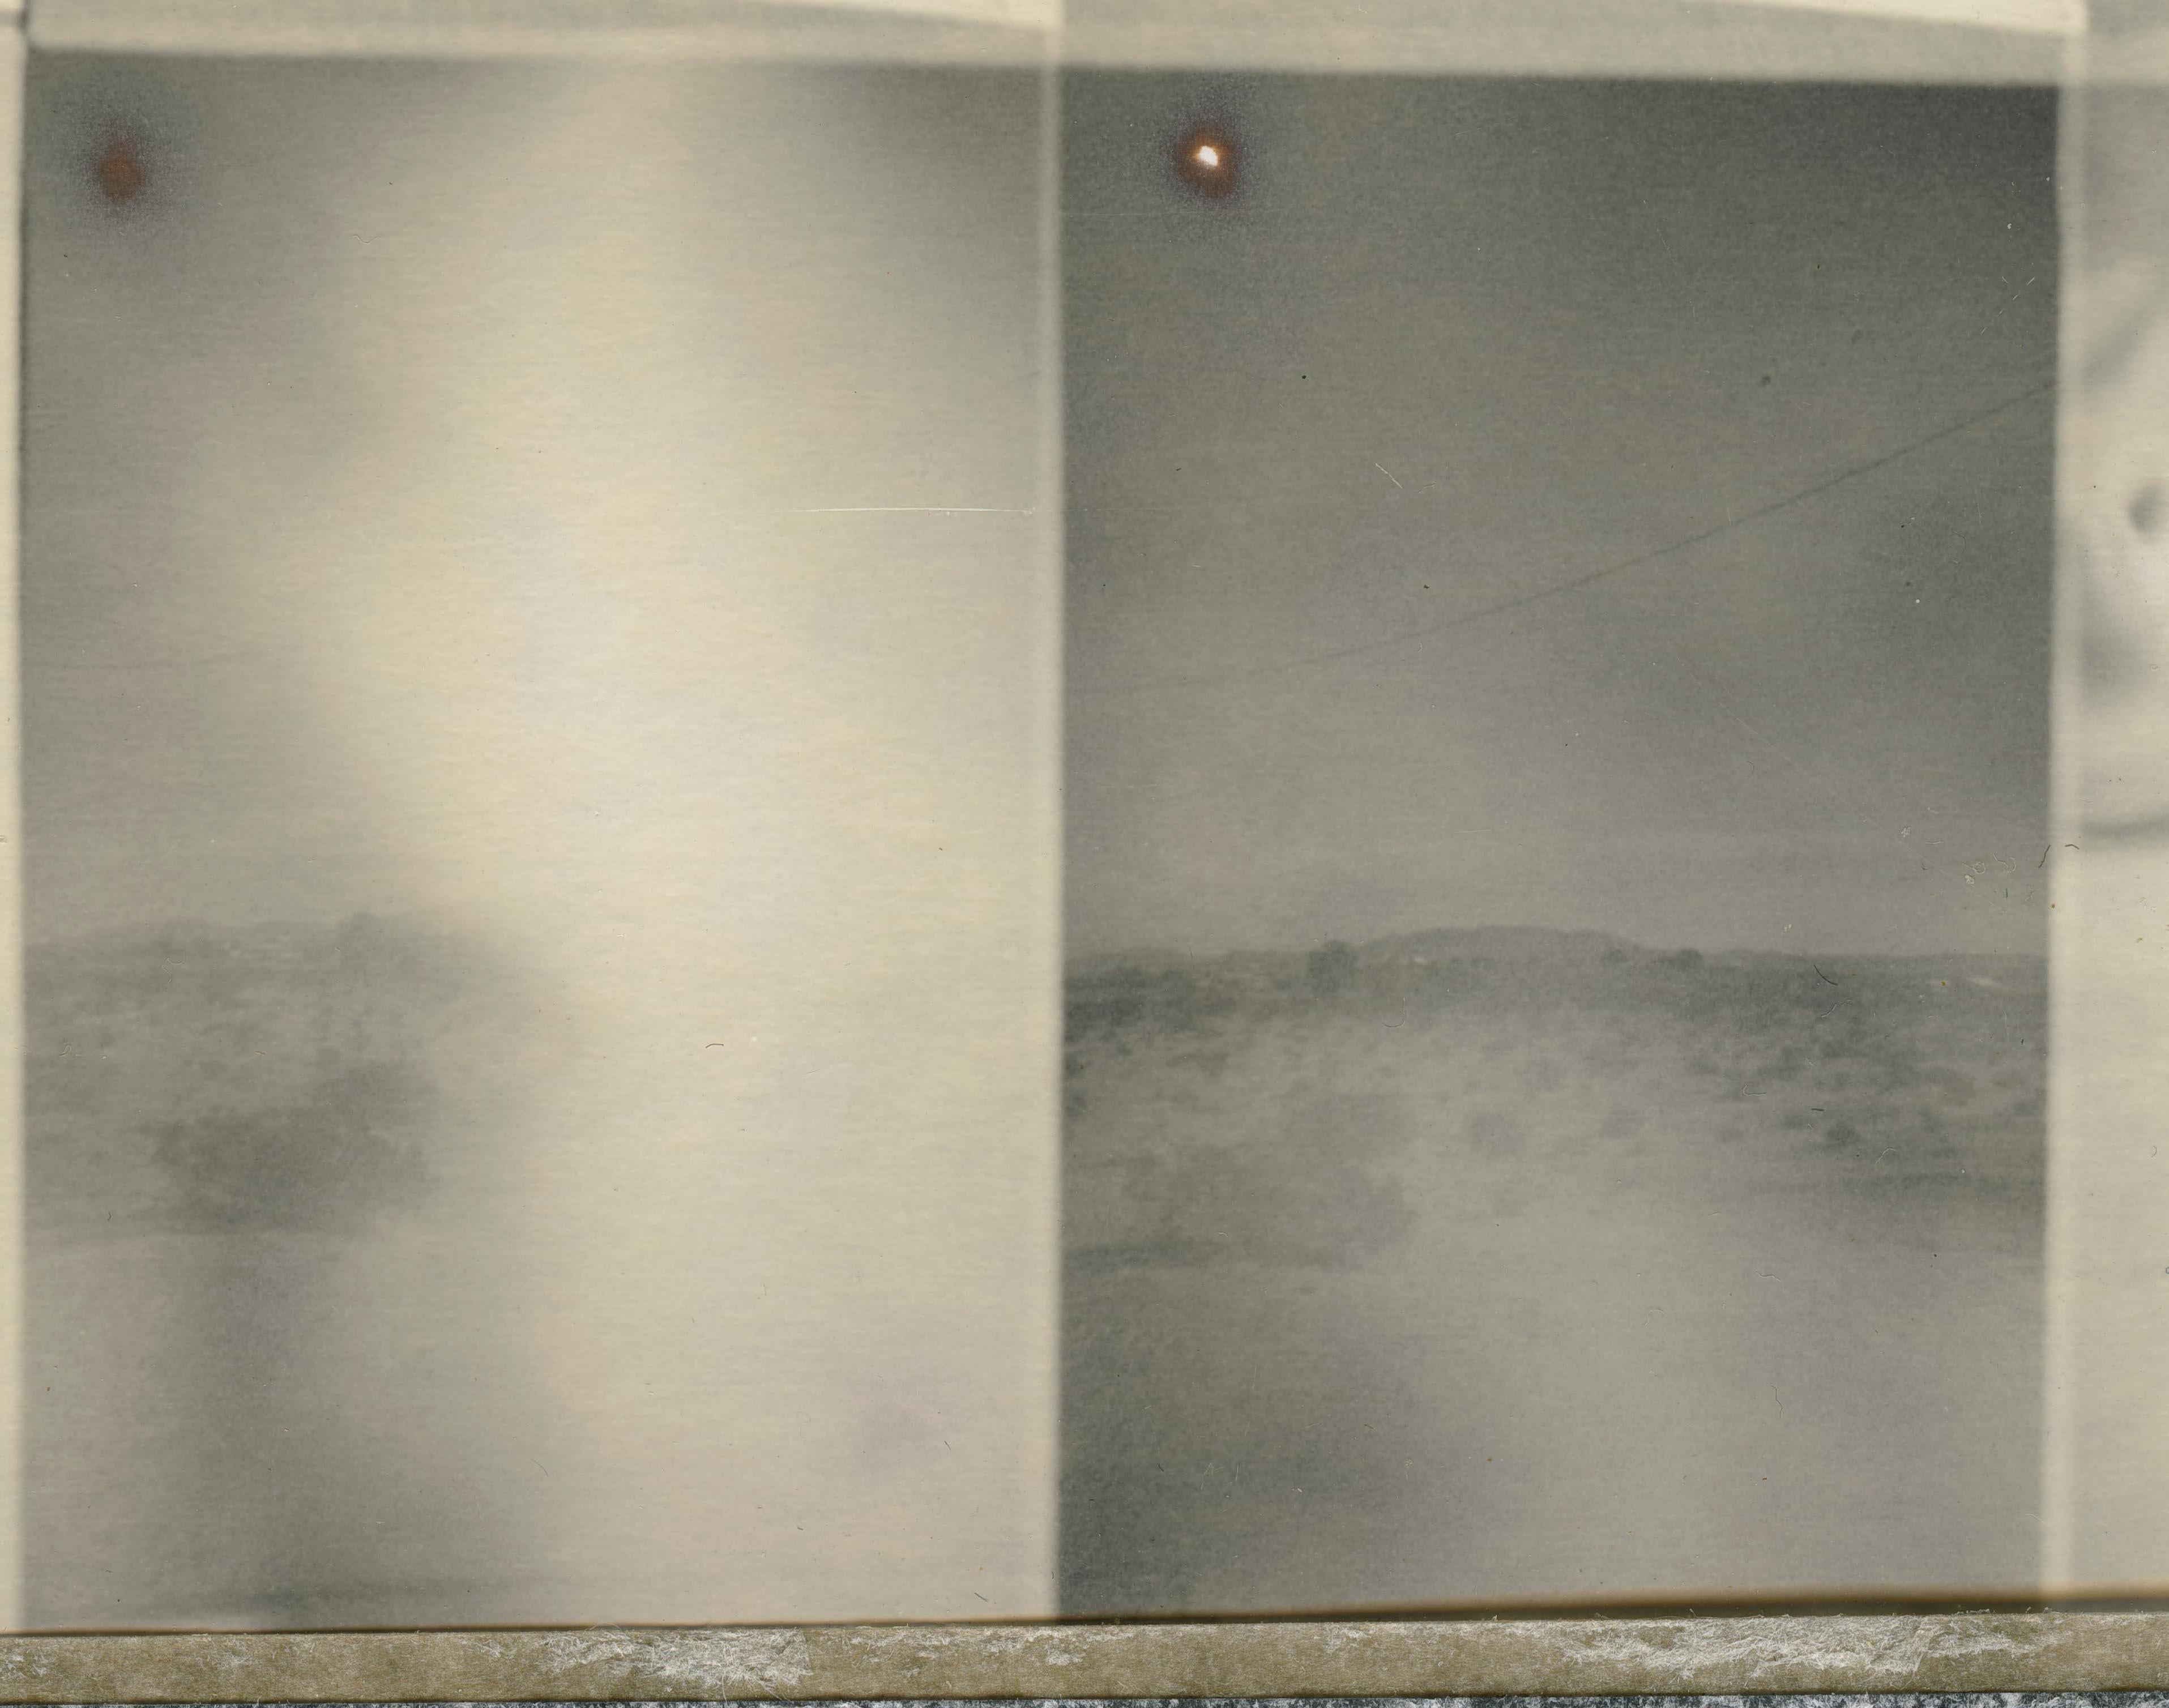 The Unconscious Mind (29 Palms, CA) - Polaroid, Contemporary, Wüste, Traum – Photograph von Stefanie Schneider